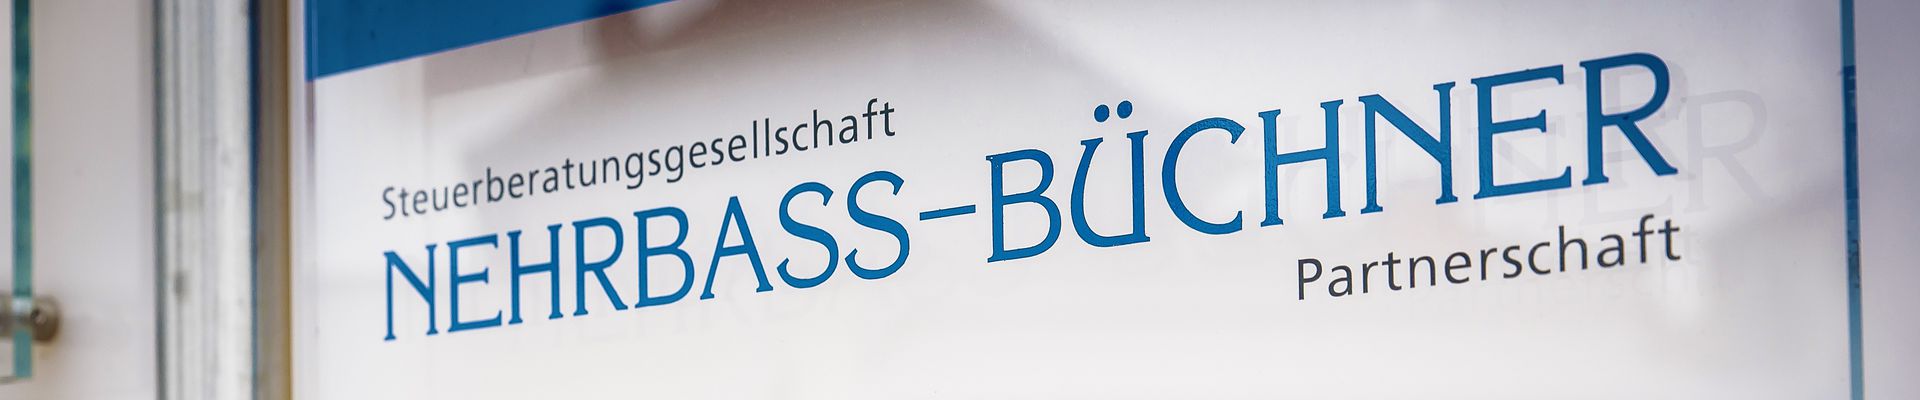 Steuerberatungsgesellschaft Nehrbass-Büchner Partnerschaft